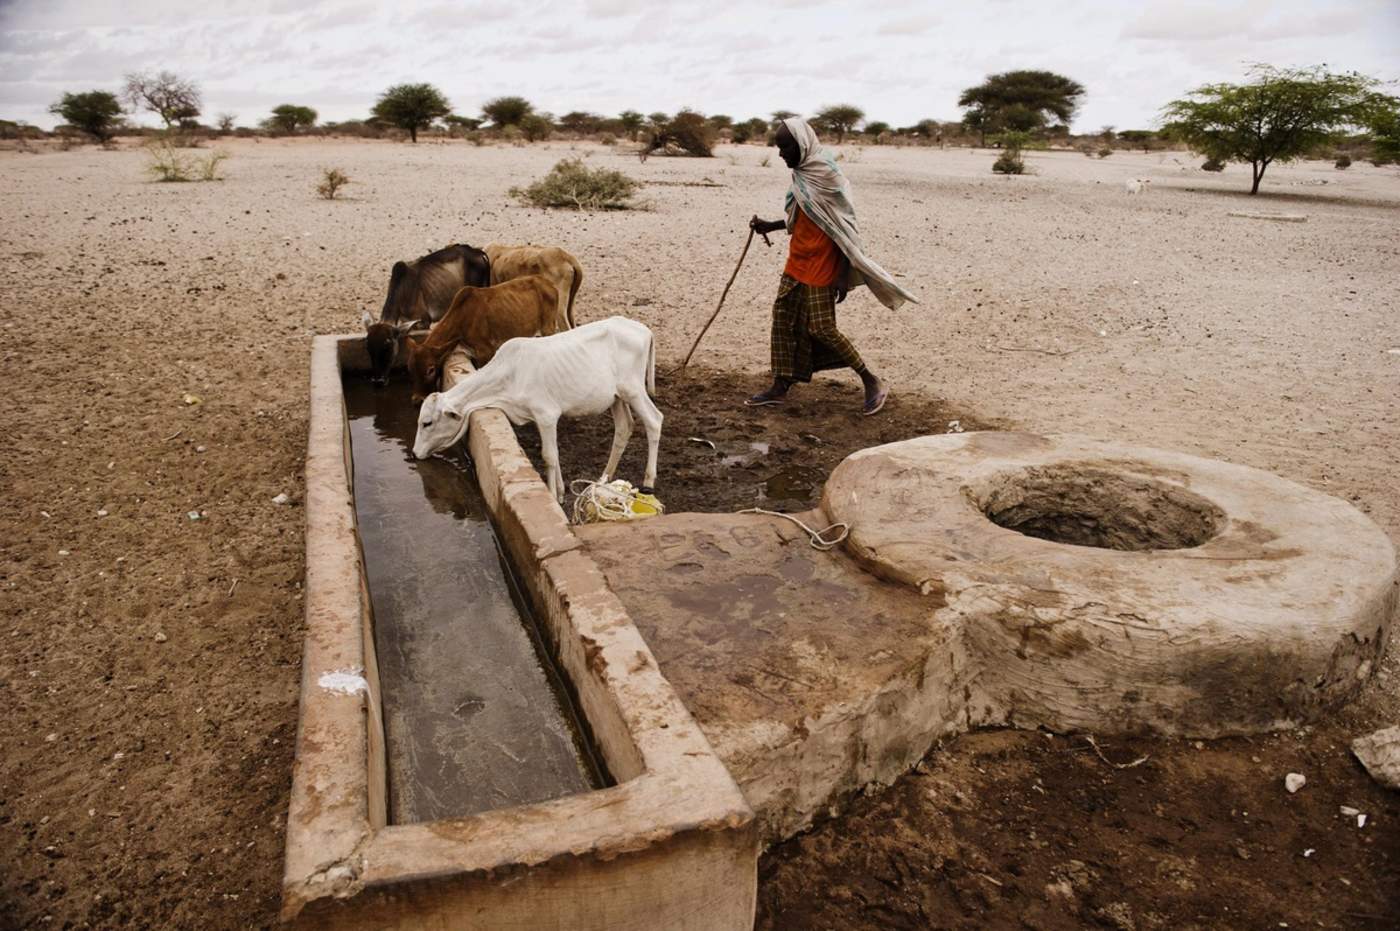 El cambio climático será 'desastroso' para África, según Guterres